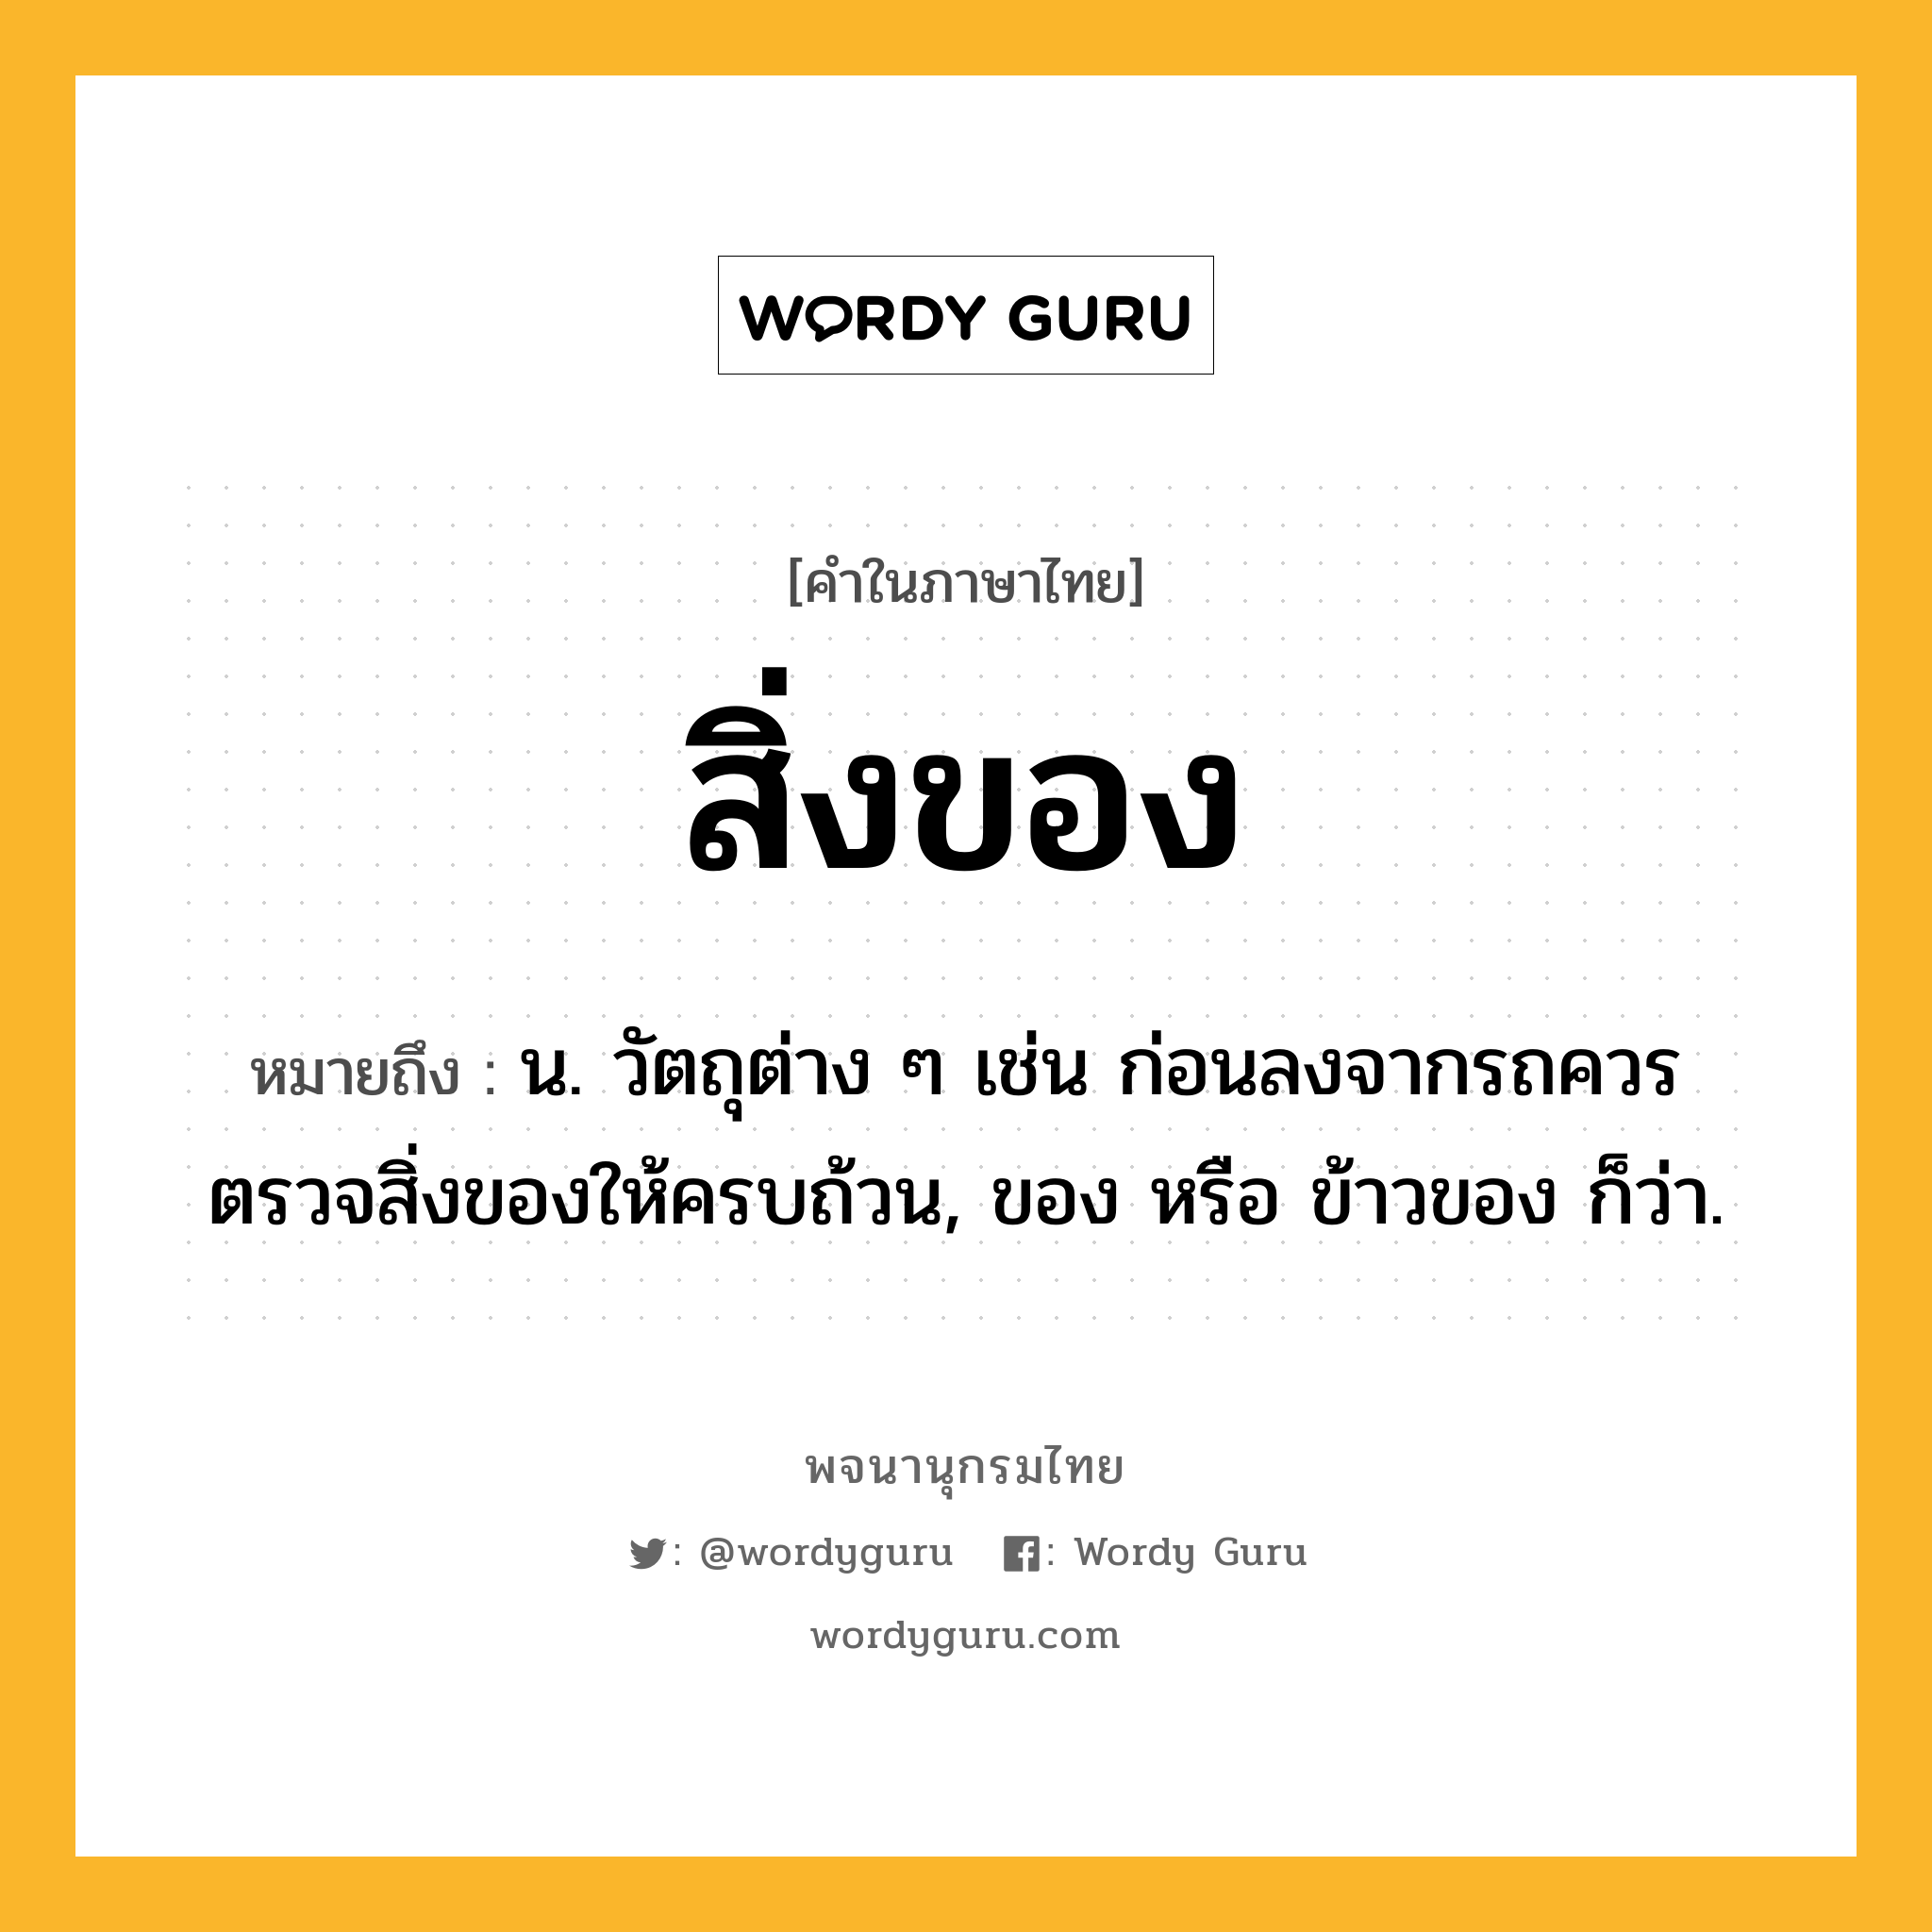 สิ่งของ ความหมาย หมายถึงอะไร?, คำในภาษาไทย สิ่งของ หมายถึง น. วัตถุต่าง ๆ เช่น ก่อนลงจากรถควรตรวจสิ่งของให้ครบถ้วน, ของ หรือ ข้าวของ ก็ว่า.